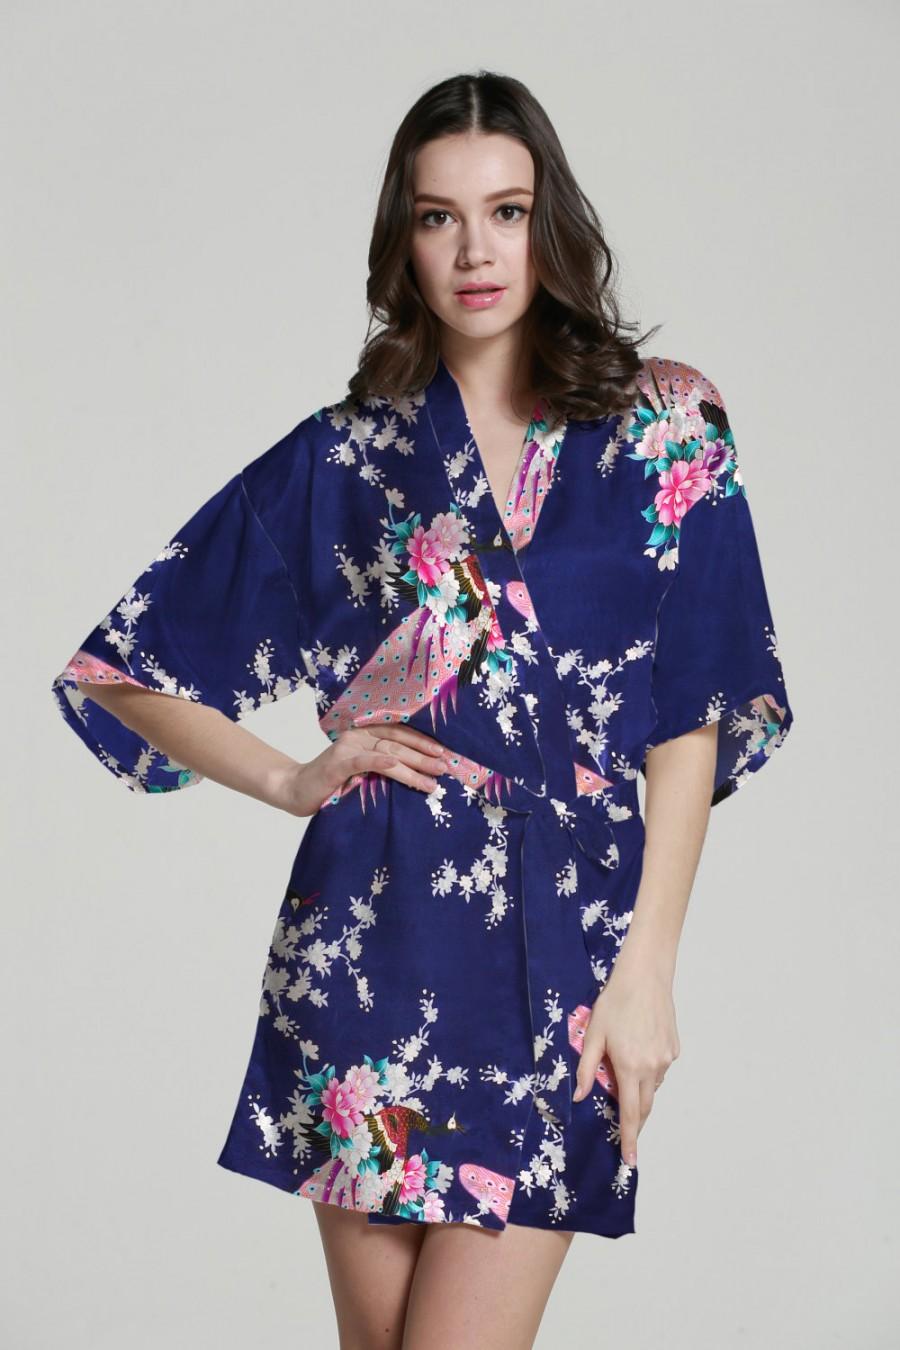 Hochzeit - Baby kimono robe kimono maxi dress silk kimono dressing gown satin kimono robe japanese kimono bathrobes wedding party gift idea bathrobe